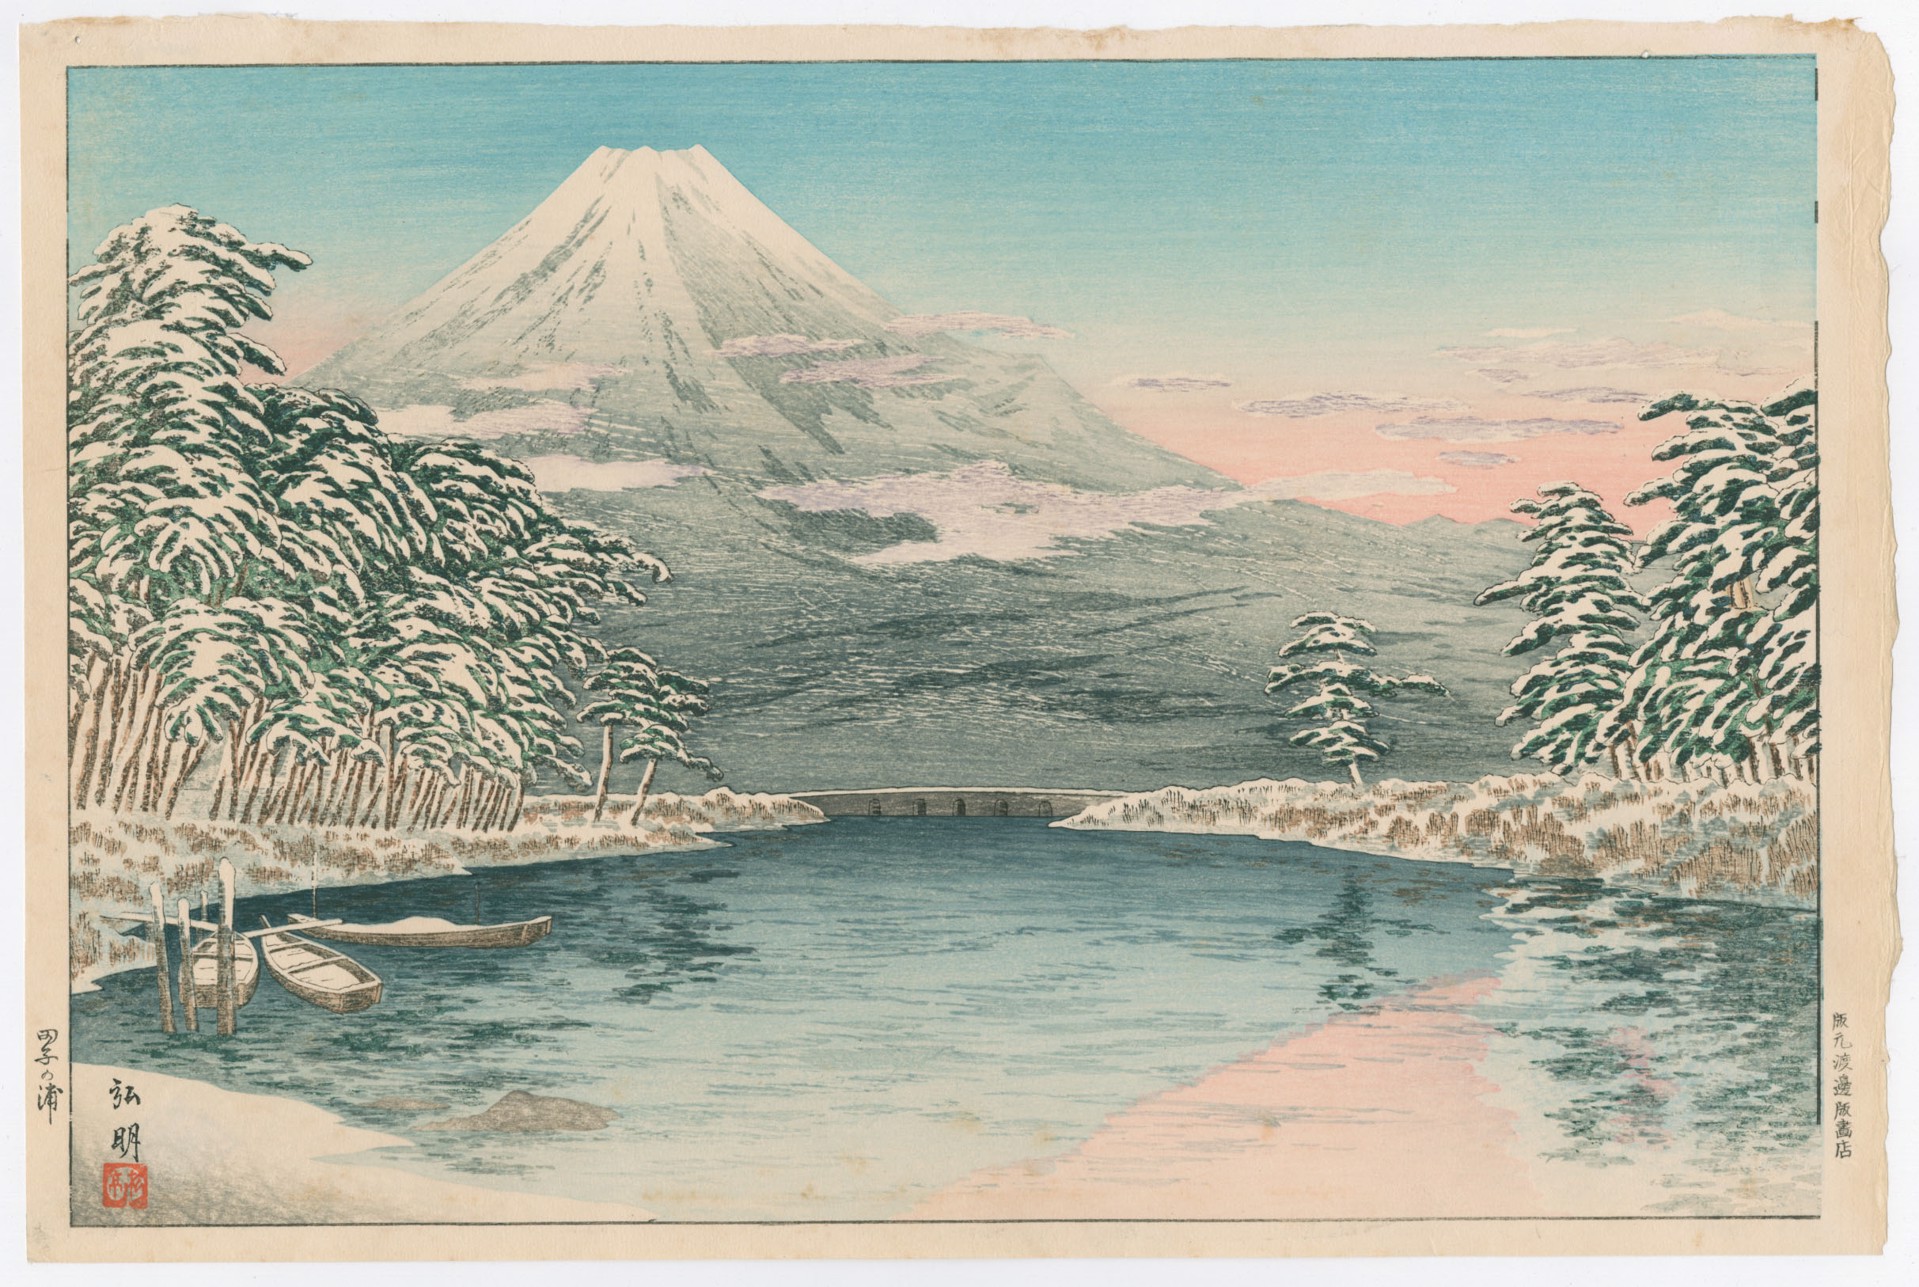 Fuji in Snow by Takahashi Hiroaki